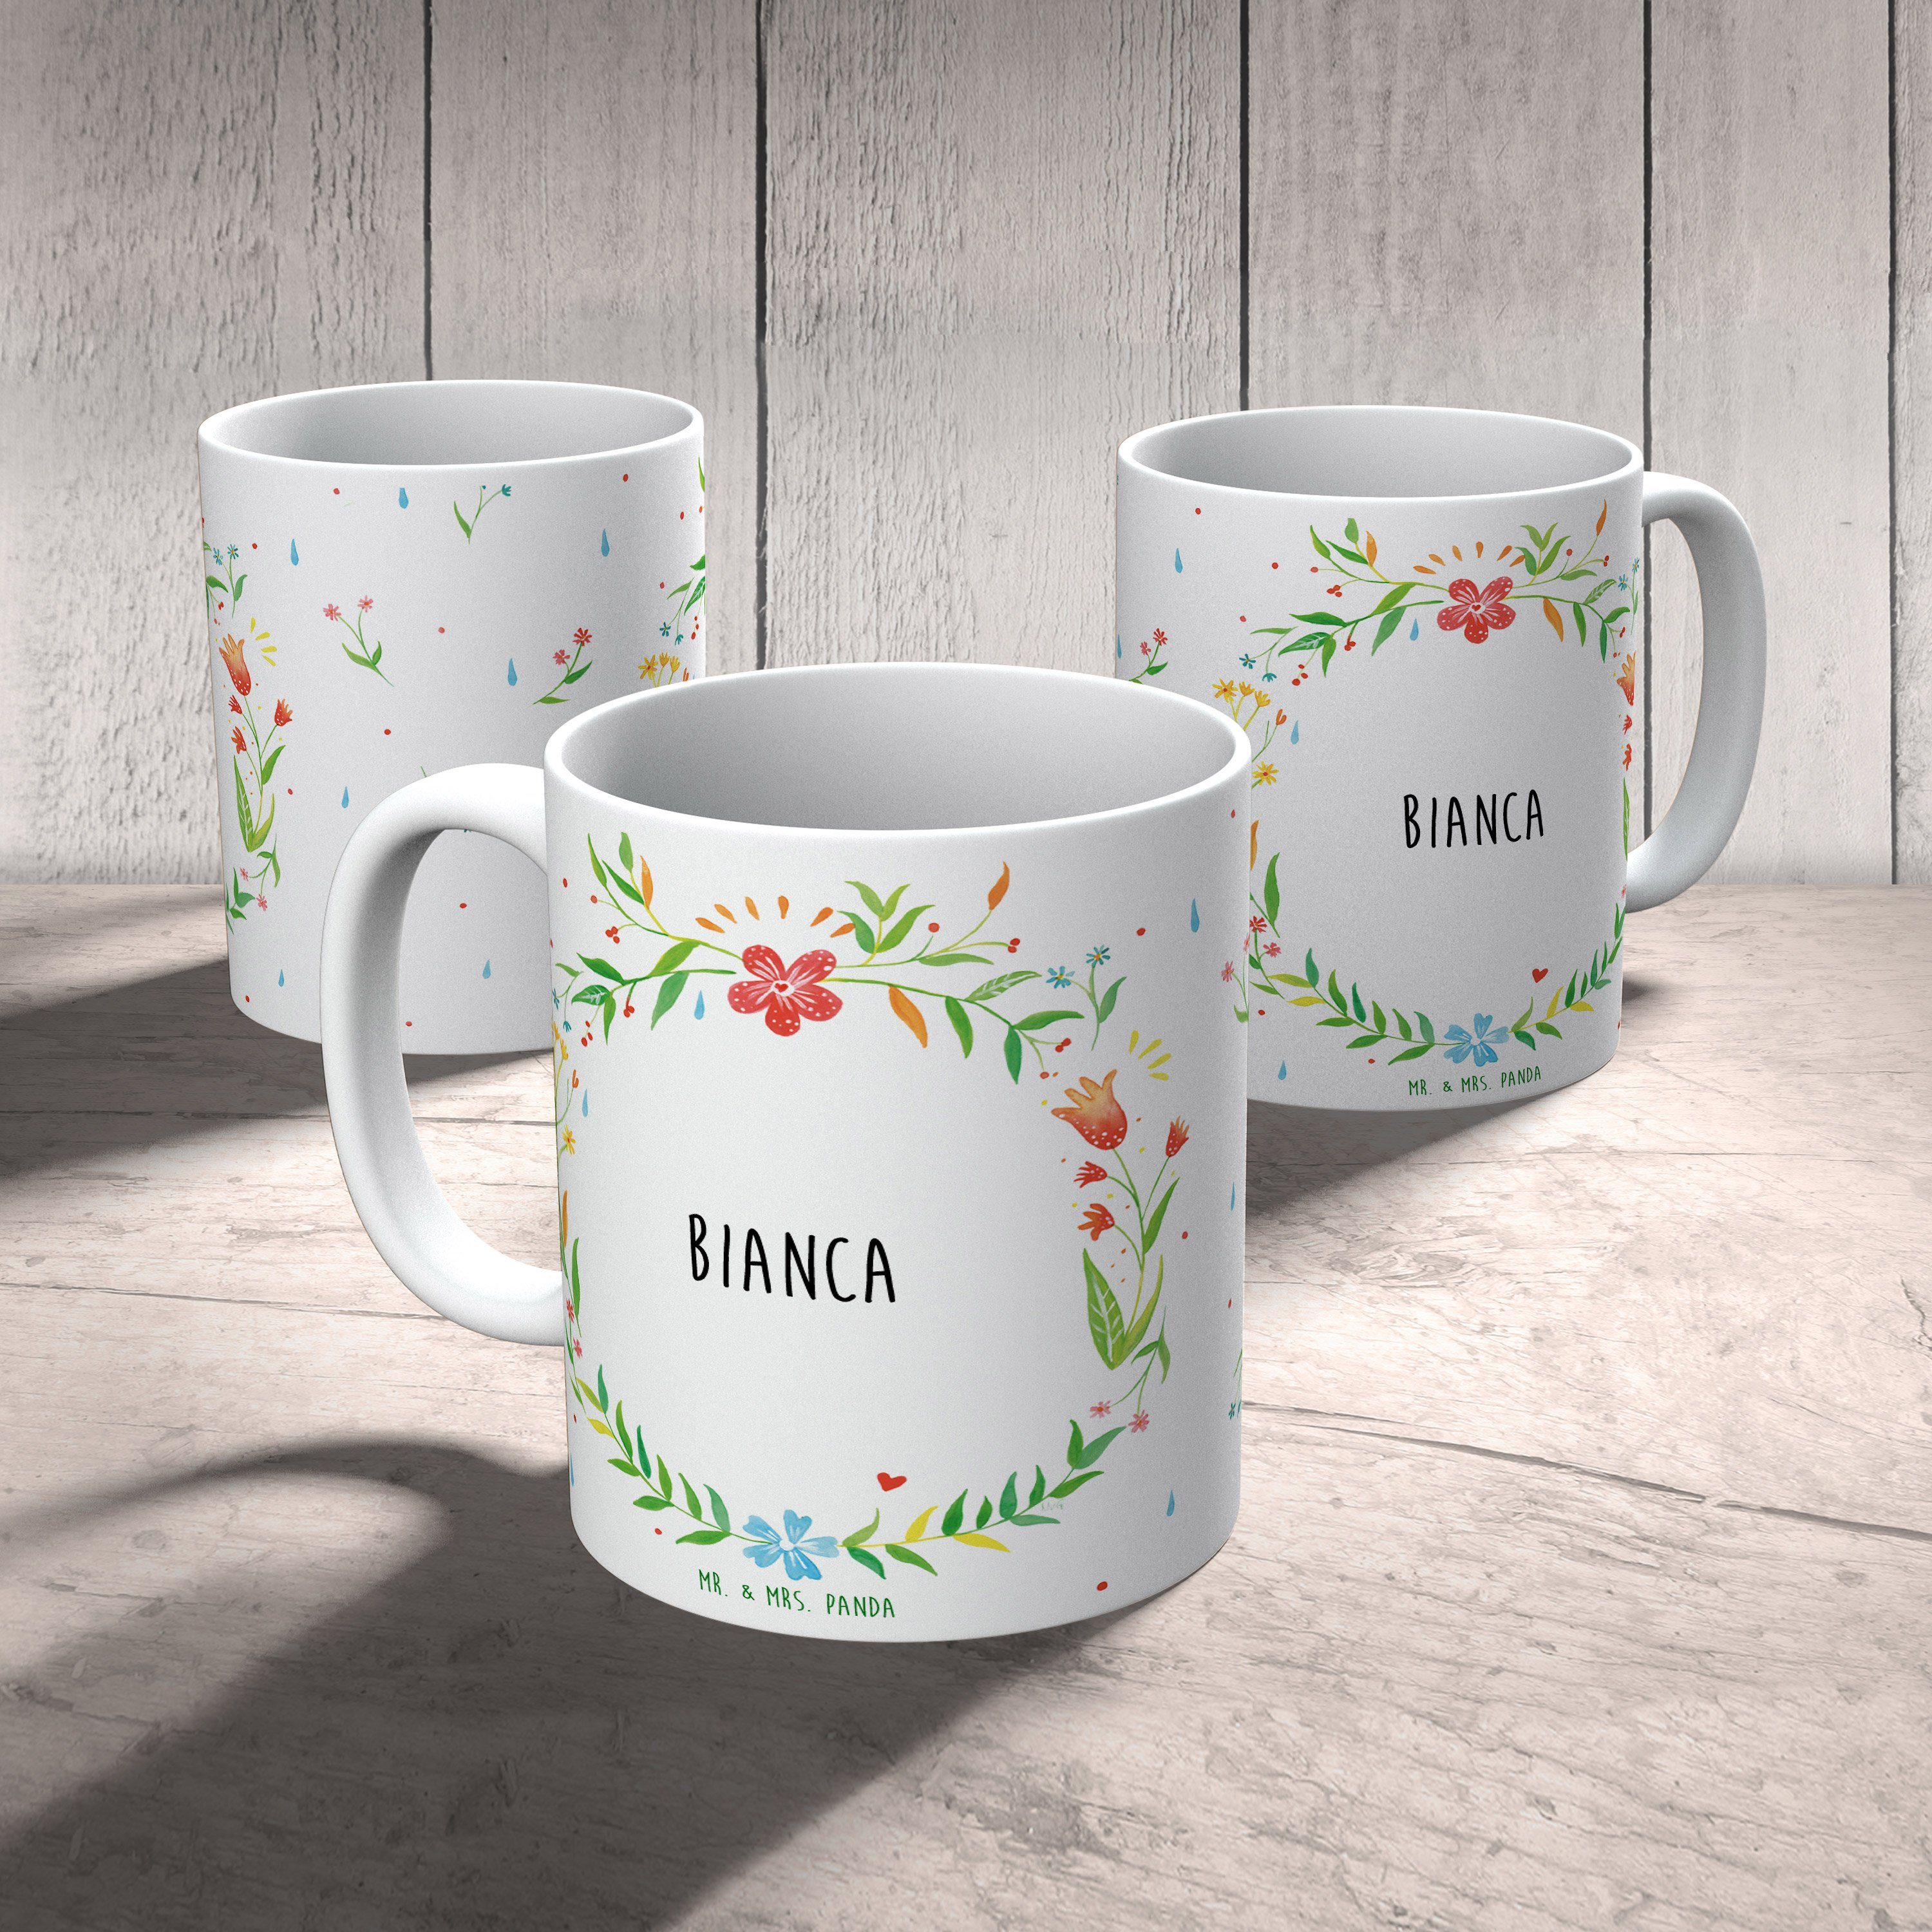 Tasse Keramik Kaffeebecher, & Panda Tasse, Geschenk, Keramiktasse, Mr. Geschen, - Mrs. Becher, Bianca